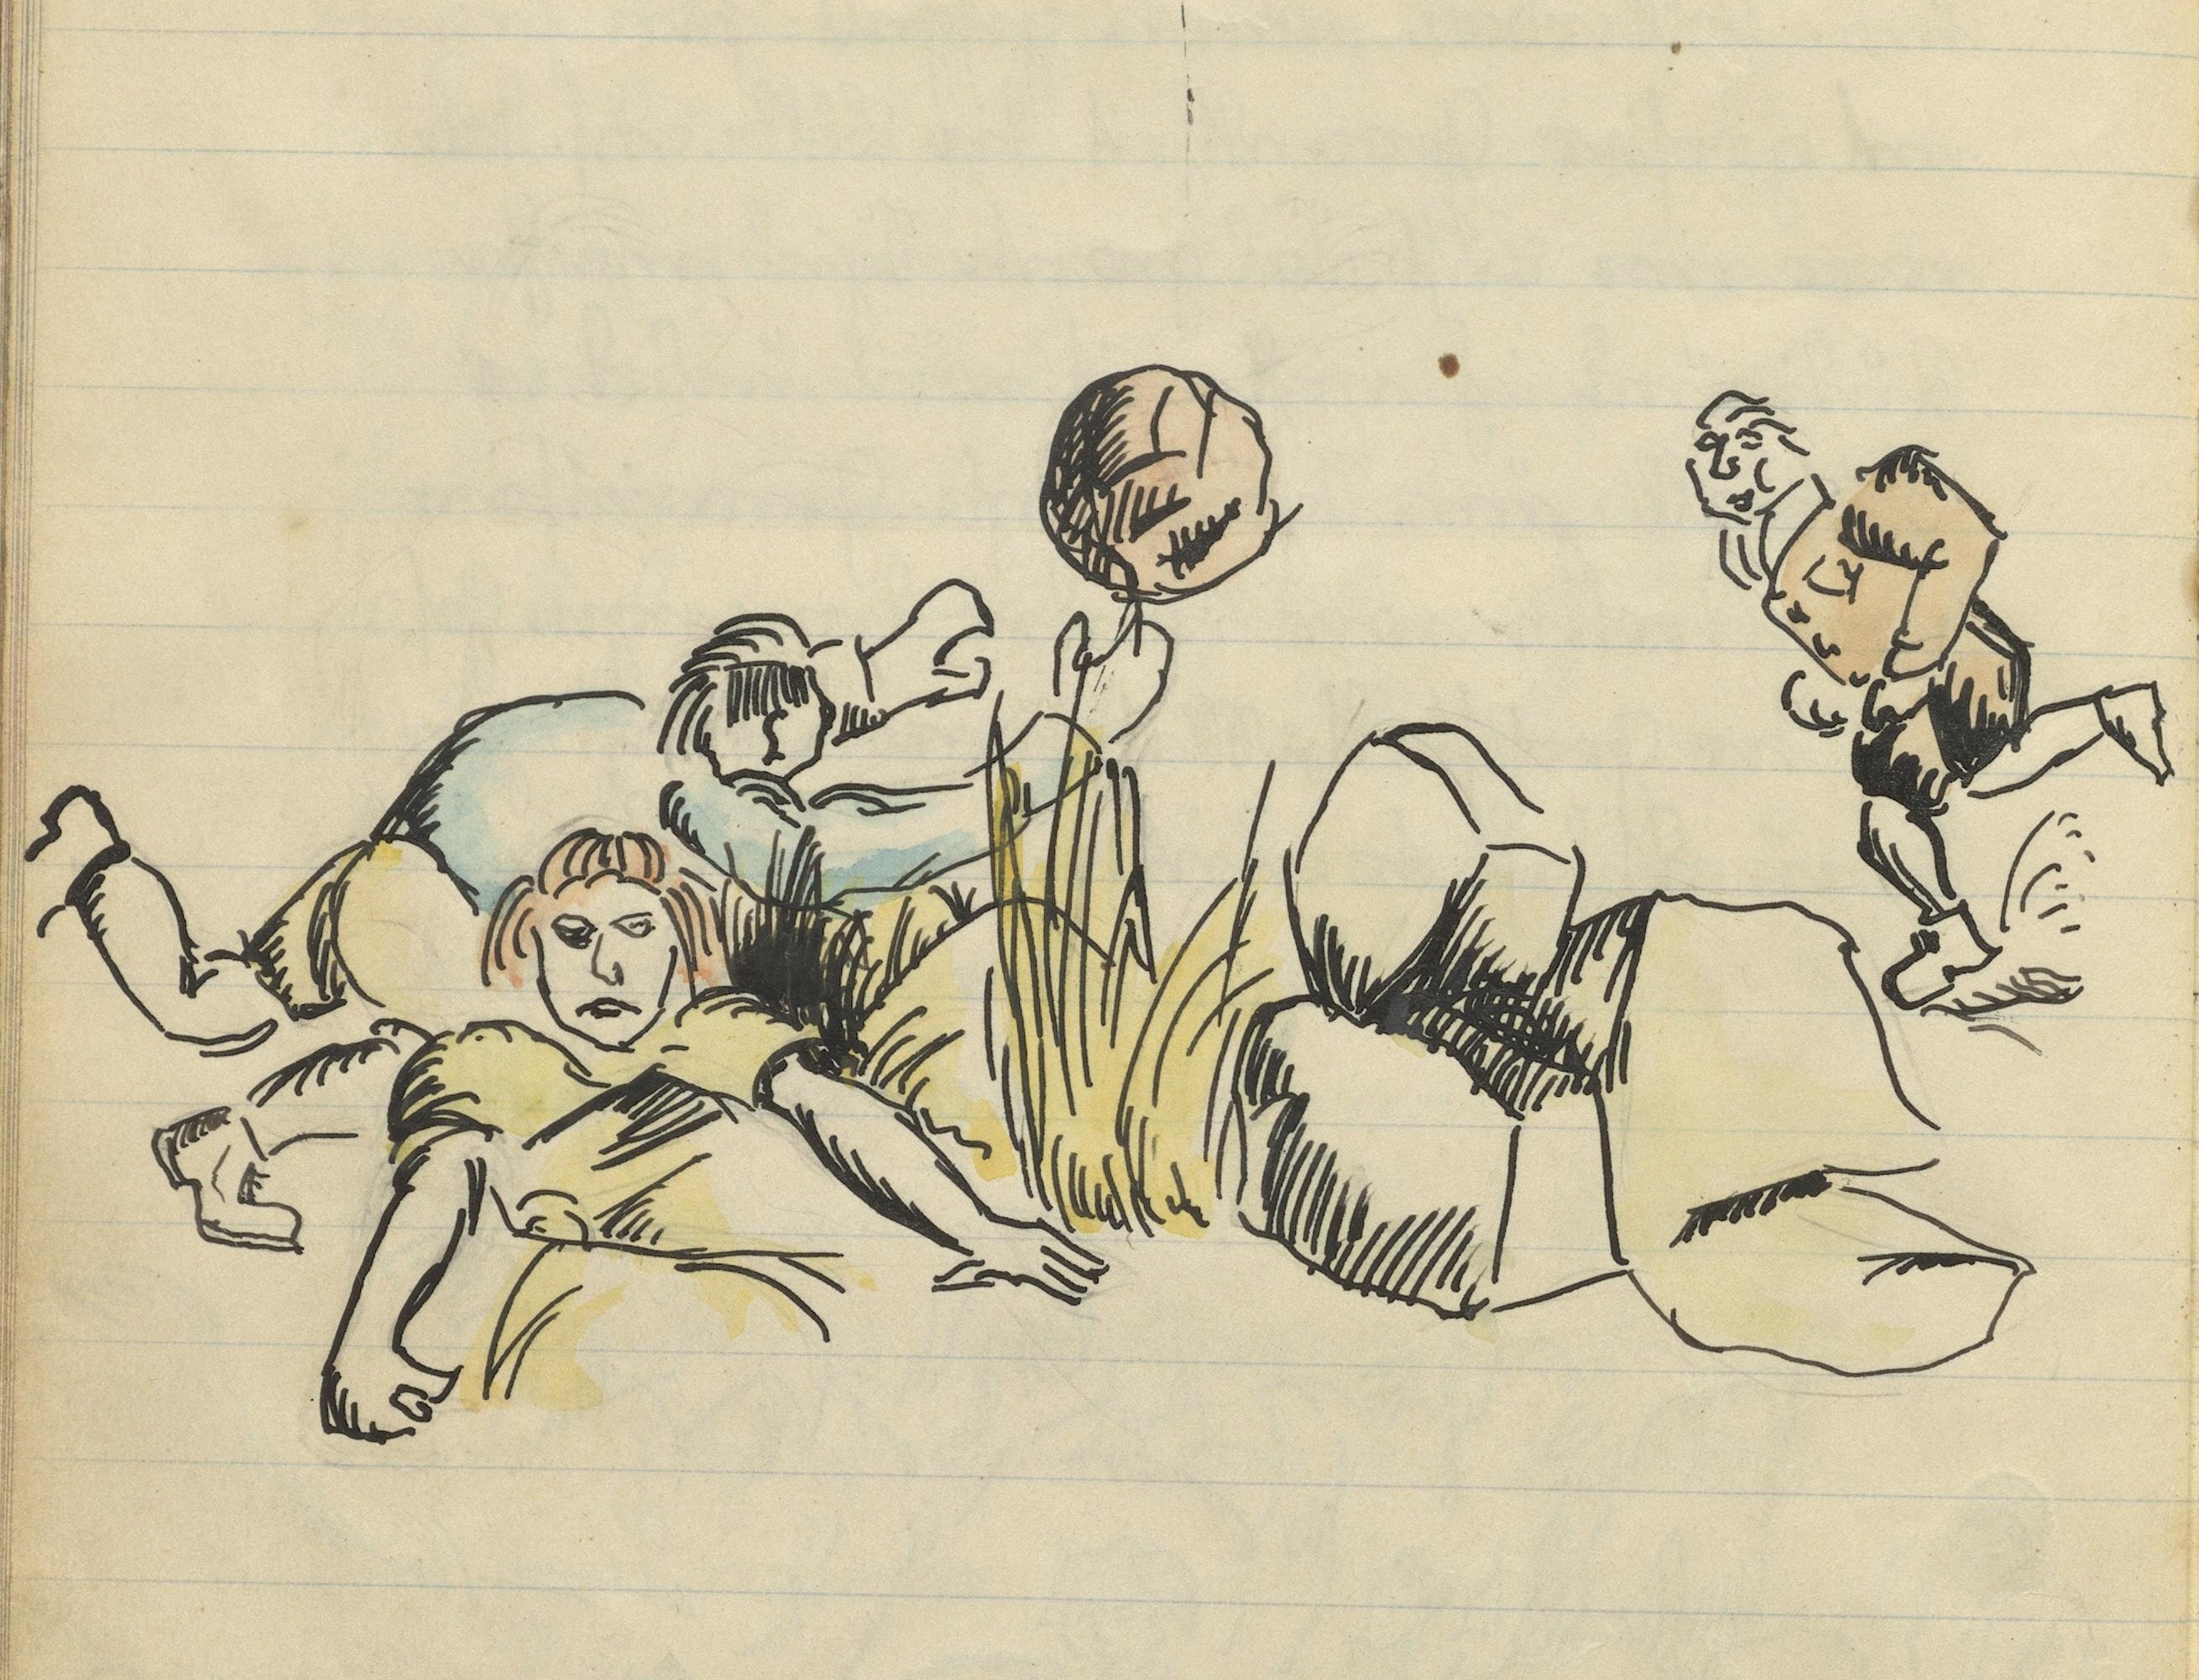 Kolorierte Tuschezeichnung von ballspielenden Kindern, die Kinder der Leipziger Kinderfreundegruppe „Kurt und Frieda“ dem zitierten Fahrtenbericht von Februar 1928 beigefügt haben. AAJB KF L 22/2. Rechteinhaber nicht ermittelbar.